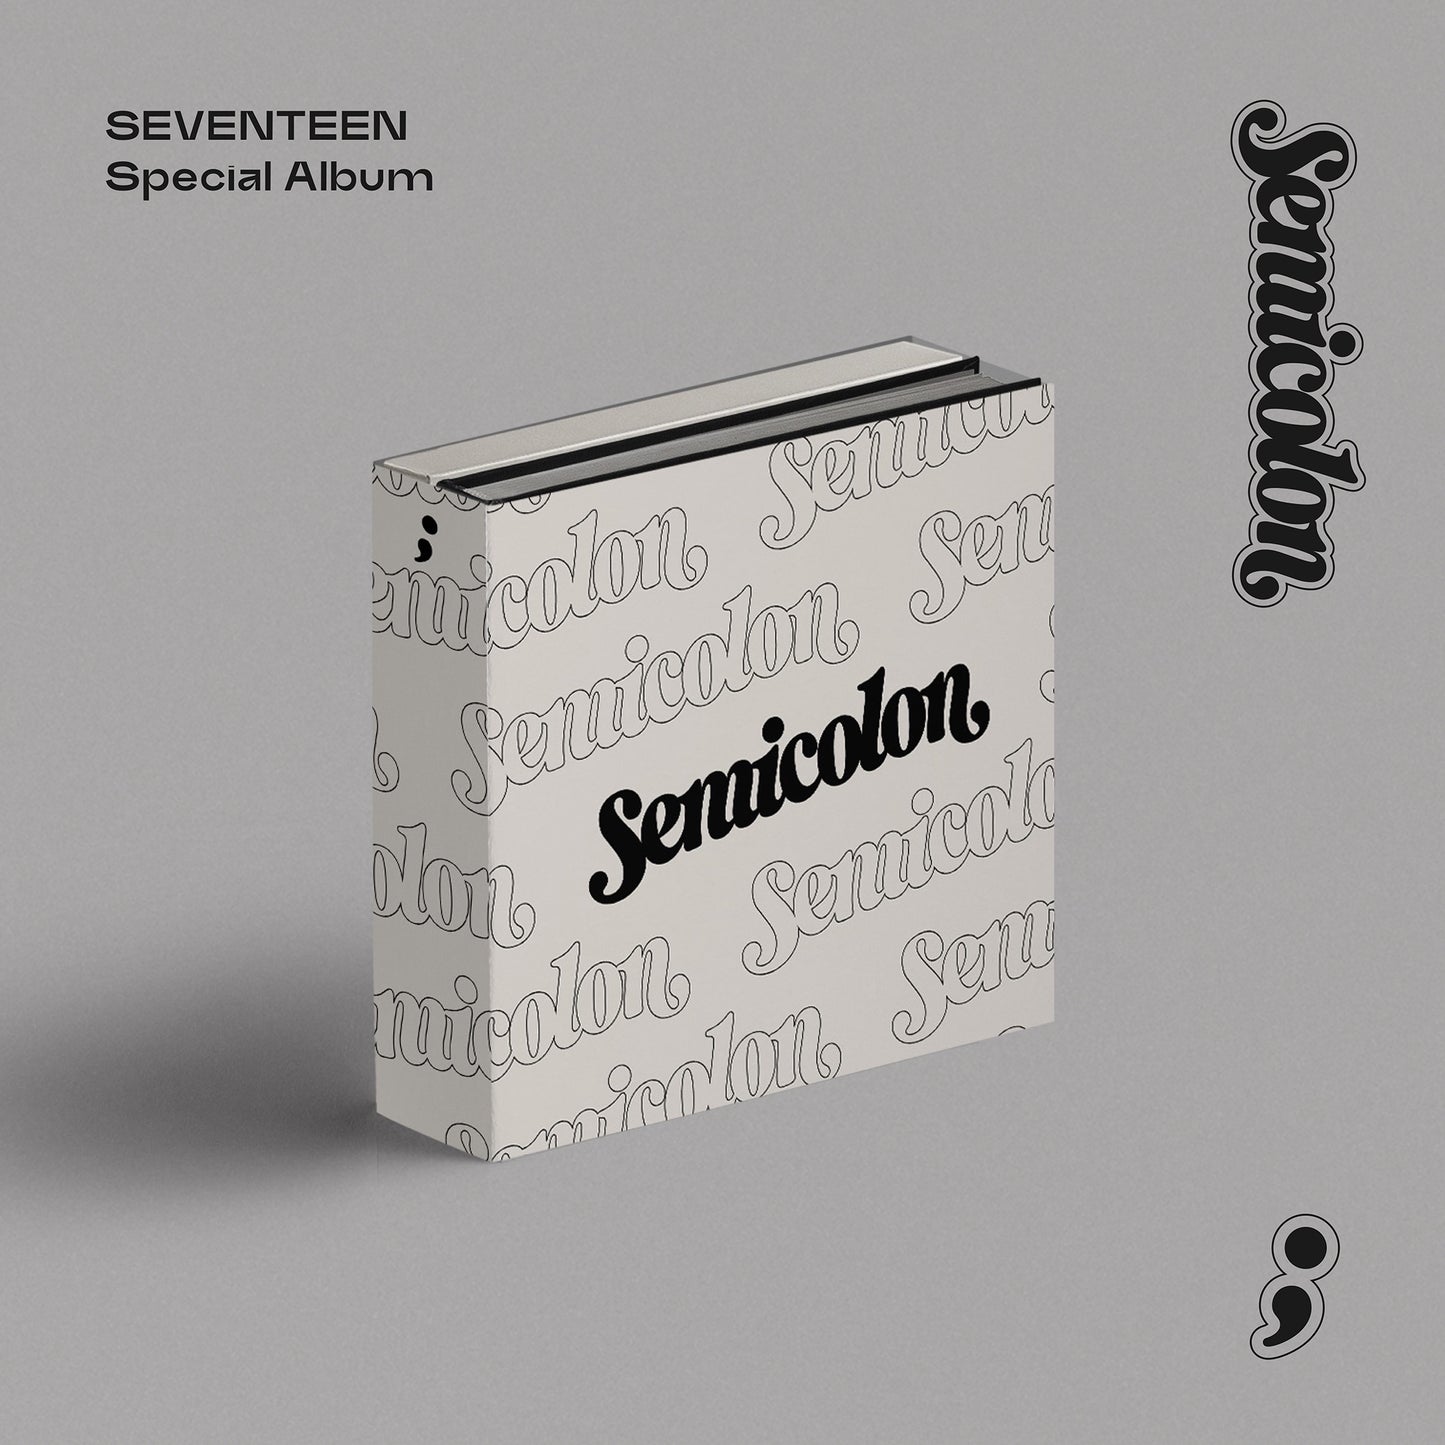 Seventeen - Special Album Semicolon